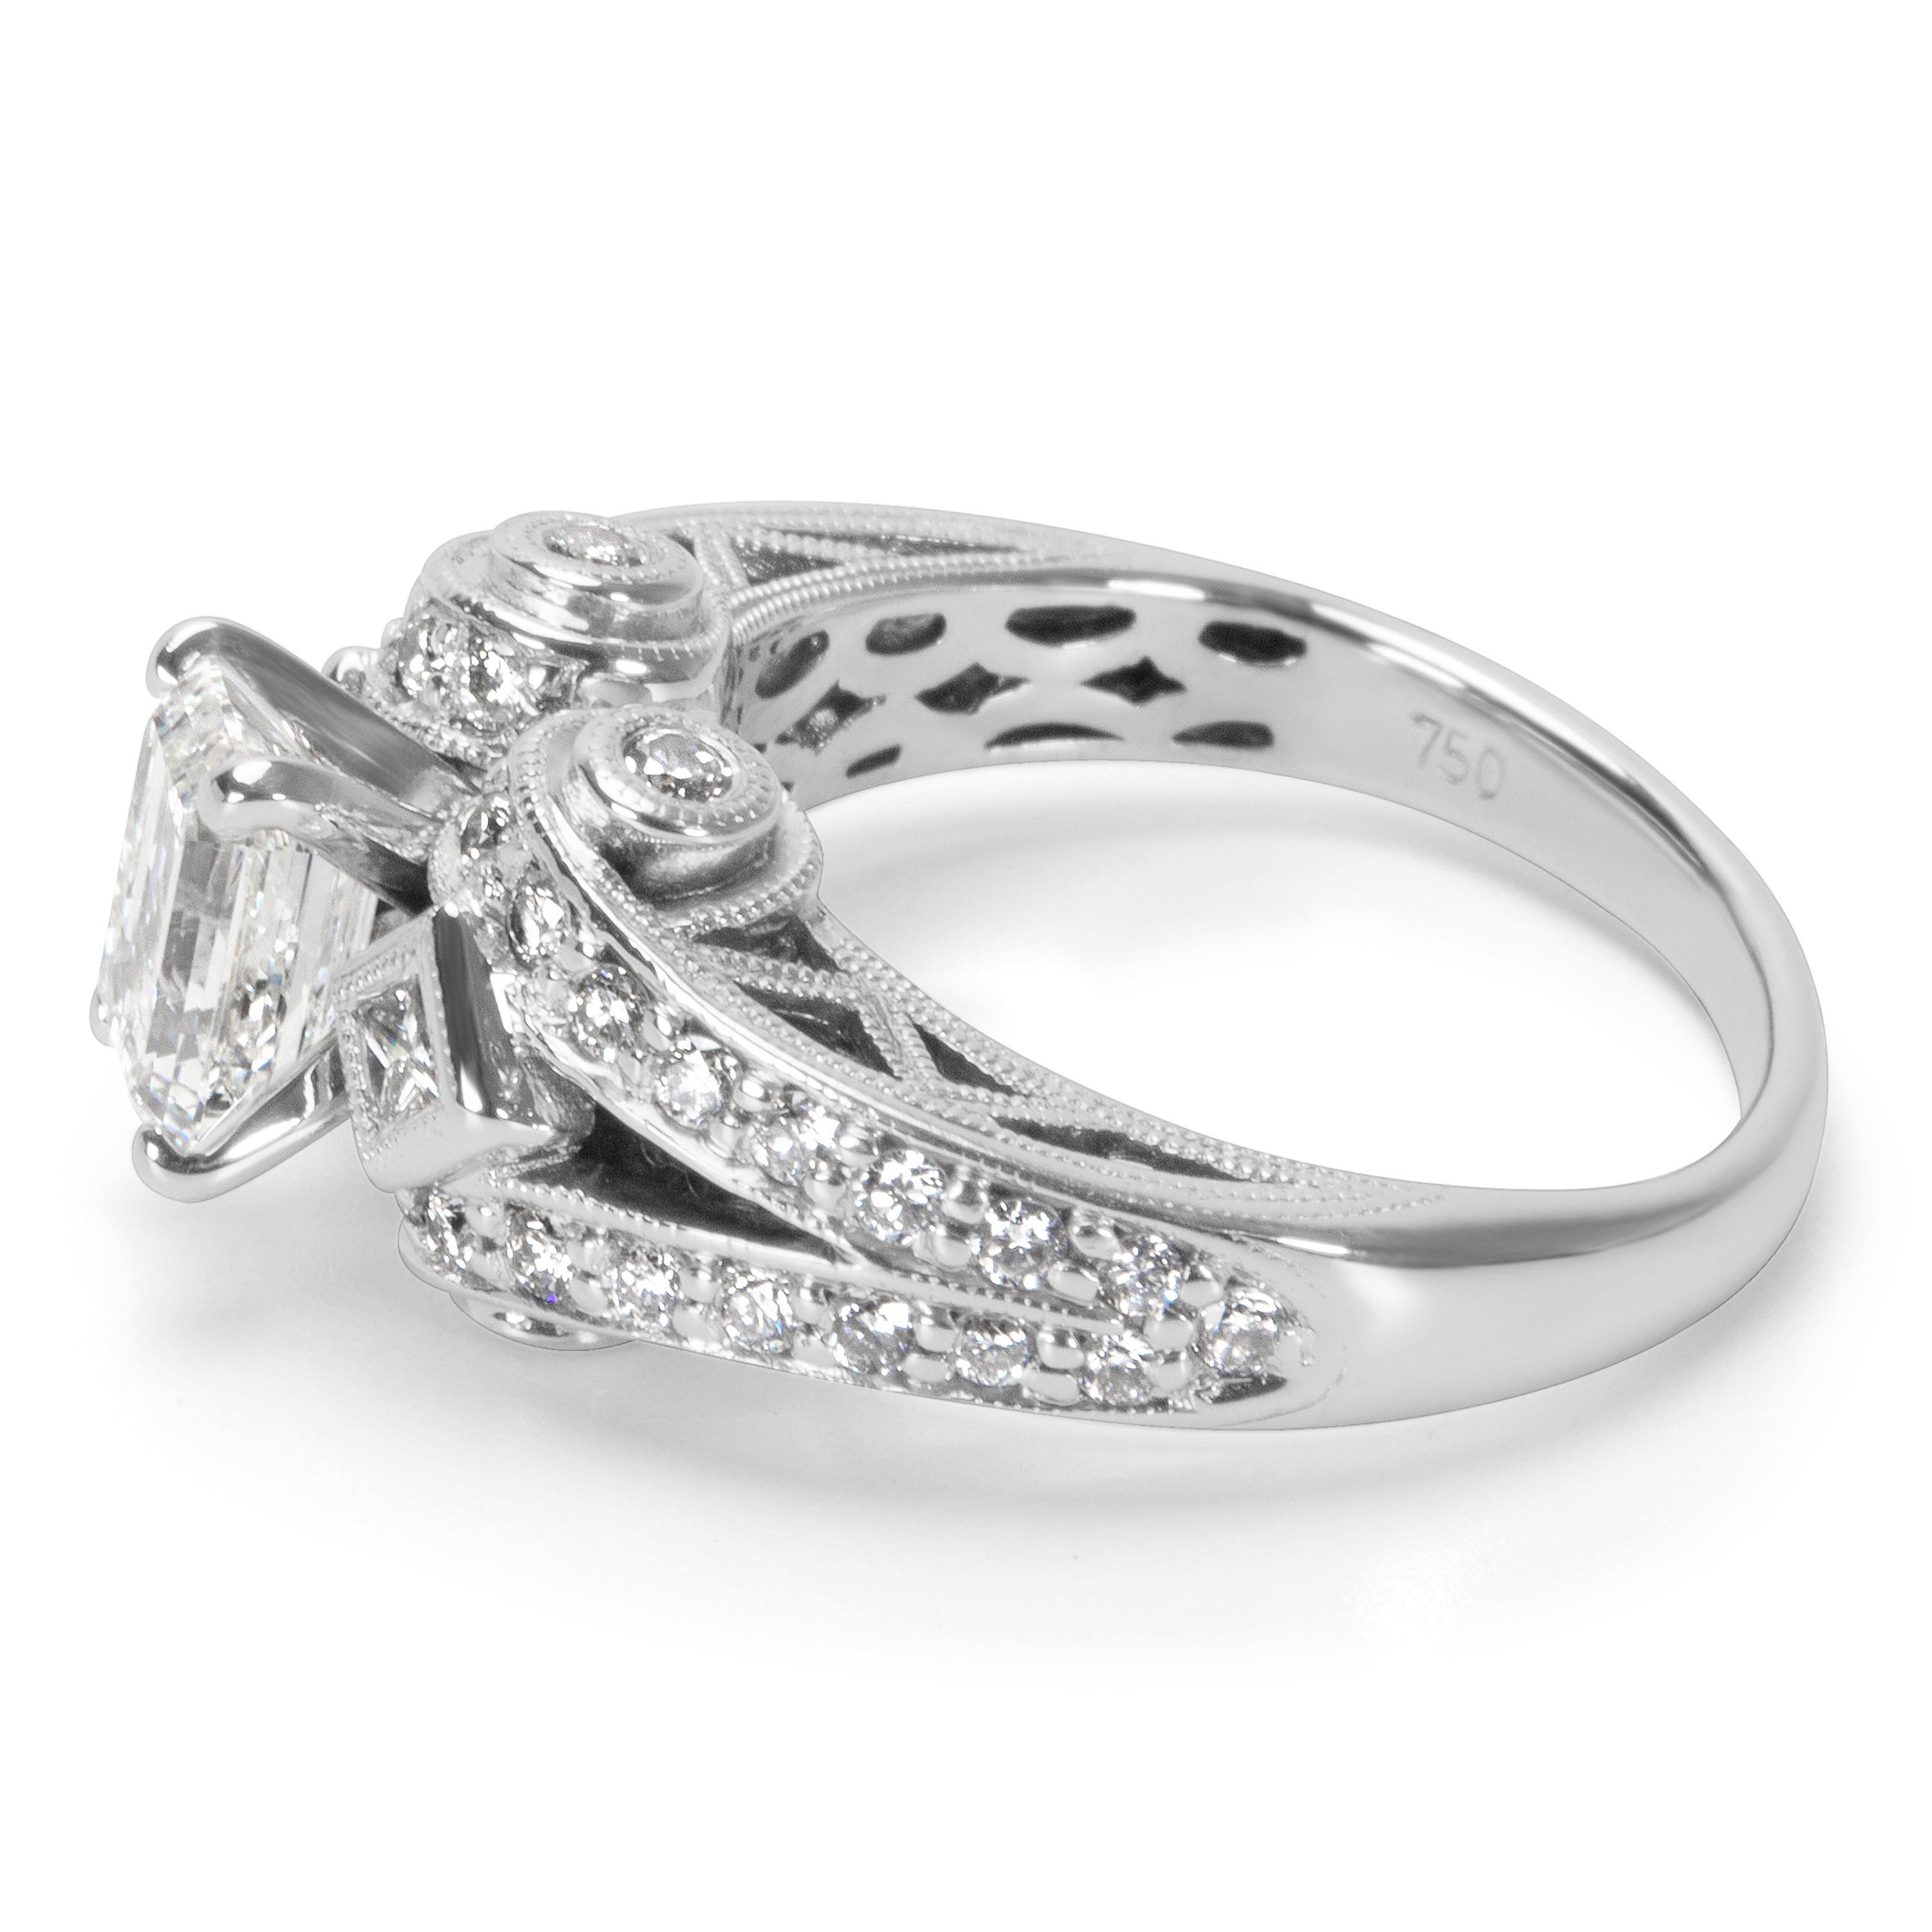 Women's IGI Certified Emerald Cut Diamond Ring in 18 Karat White Gold '1.67 Carat'